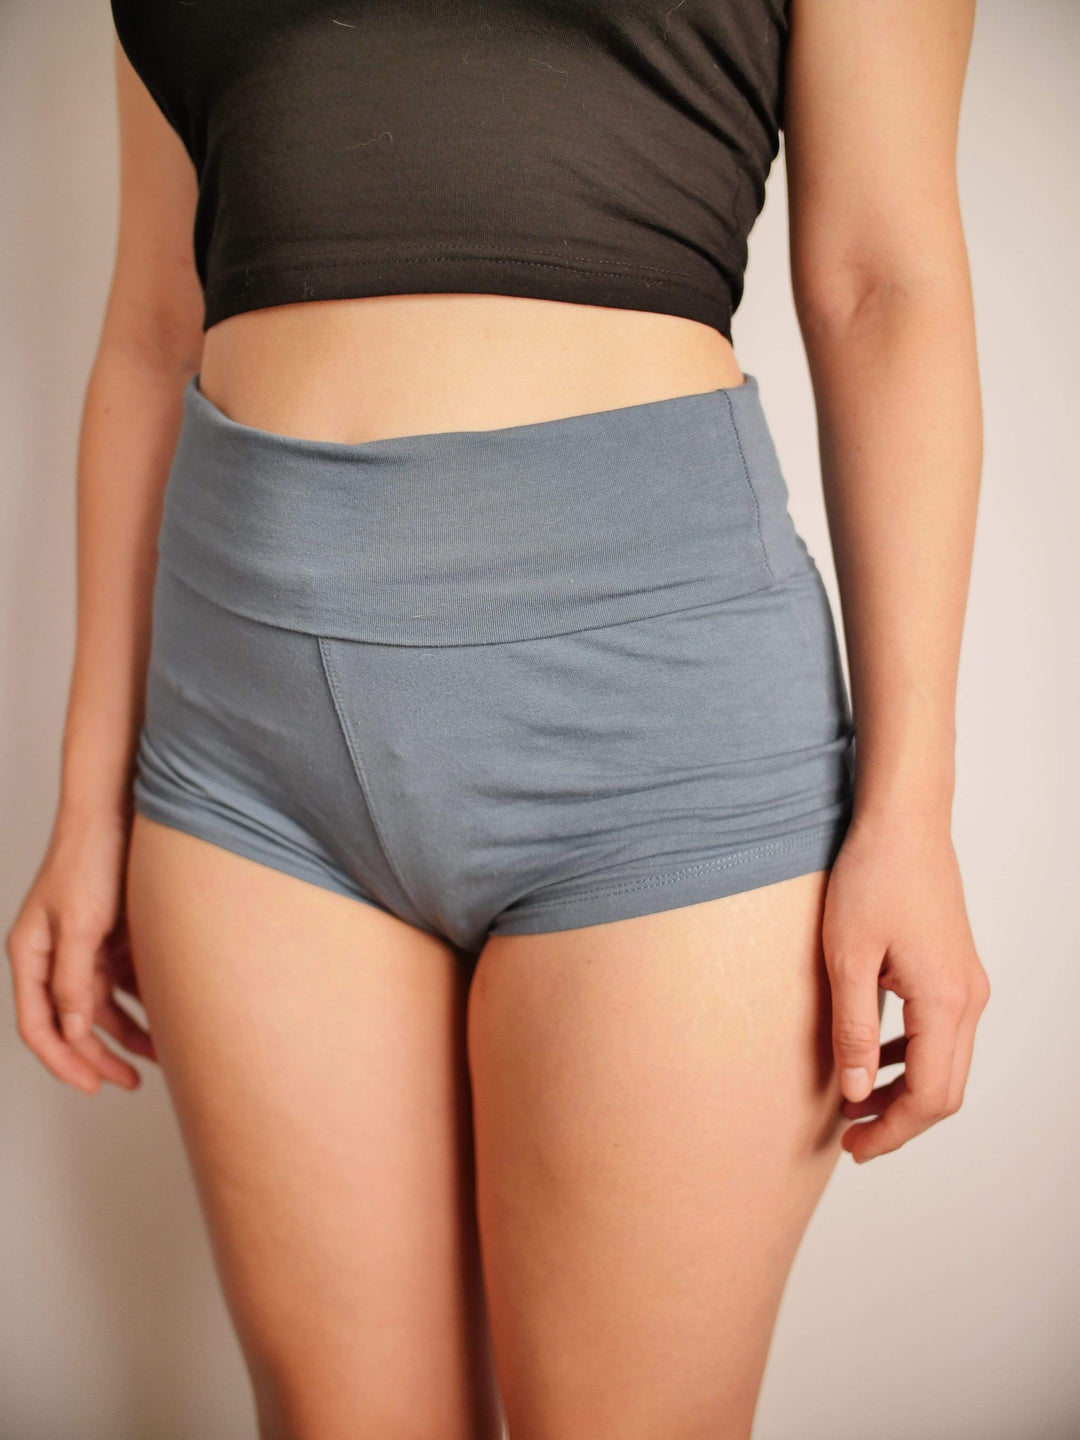 PixelThat Punderwear Yoga Shorts Boo-ty Yoga Shorts/Pants